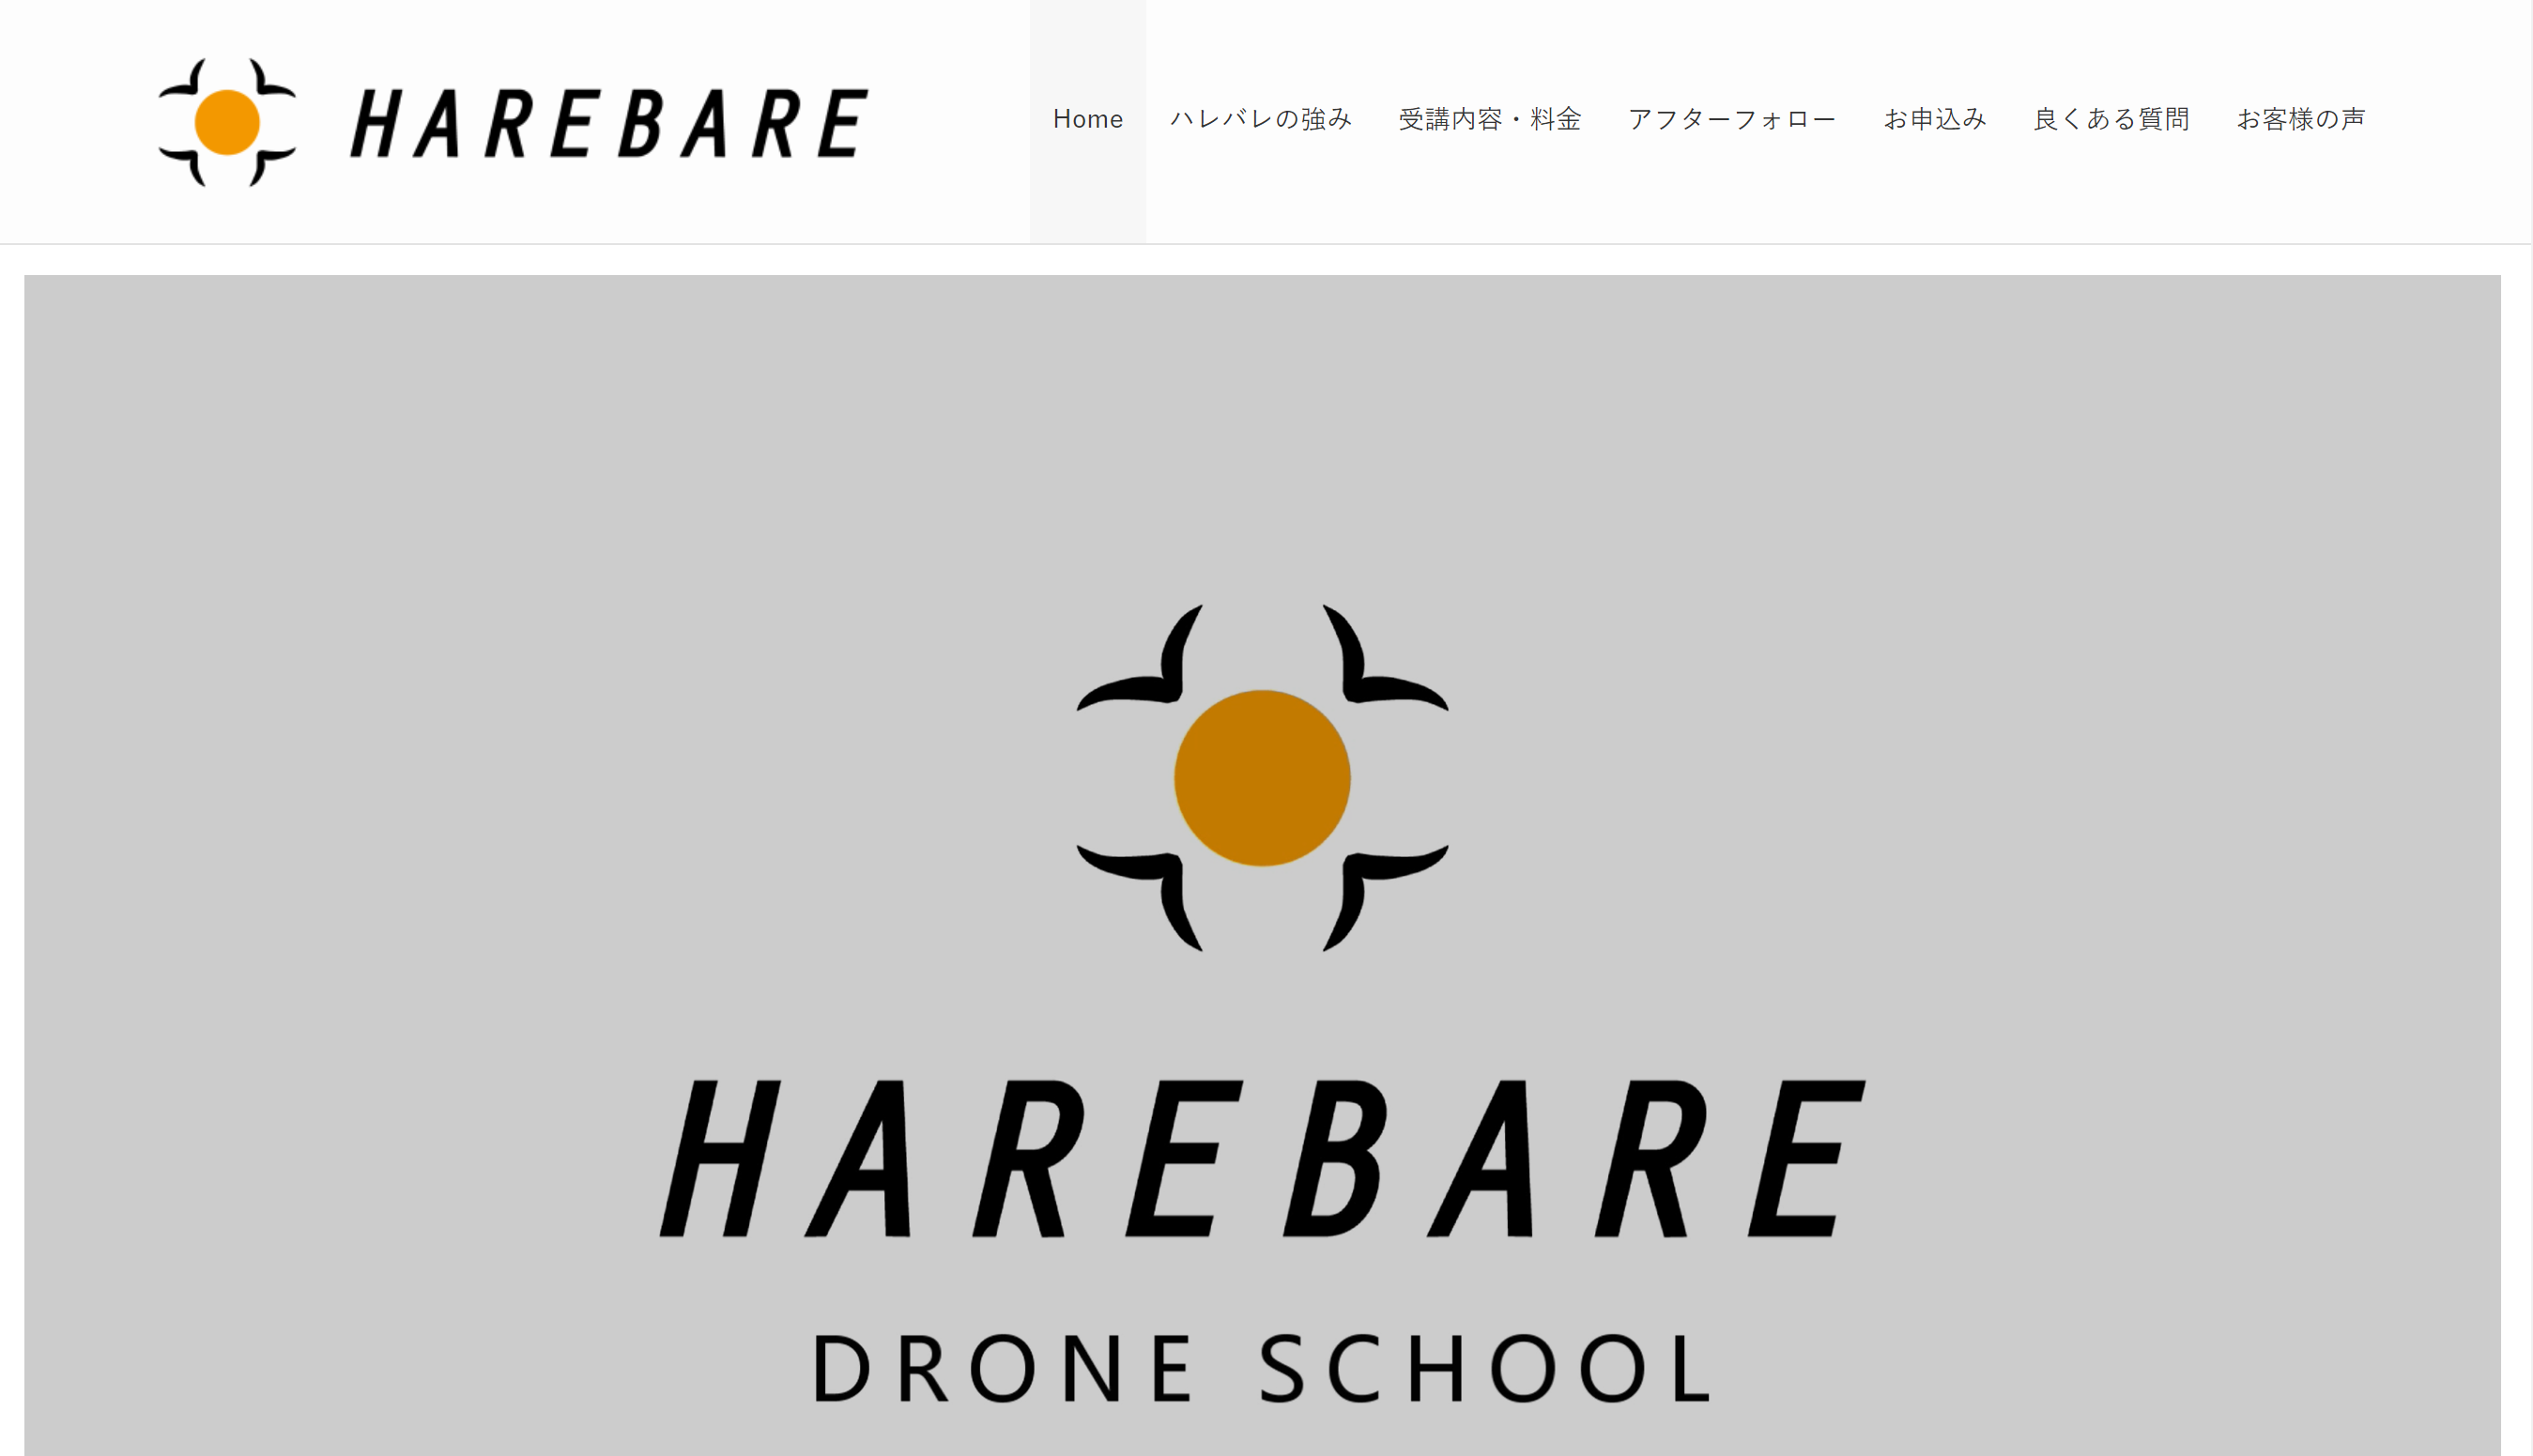 HAREBARE DRONE SCHOOL